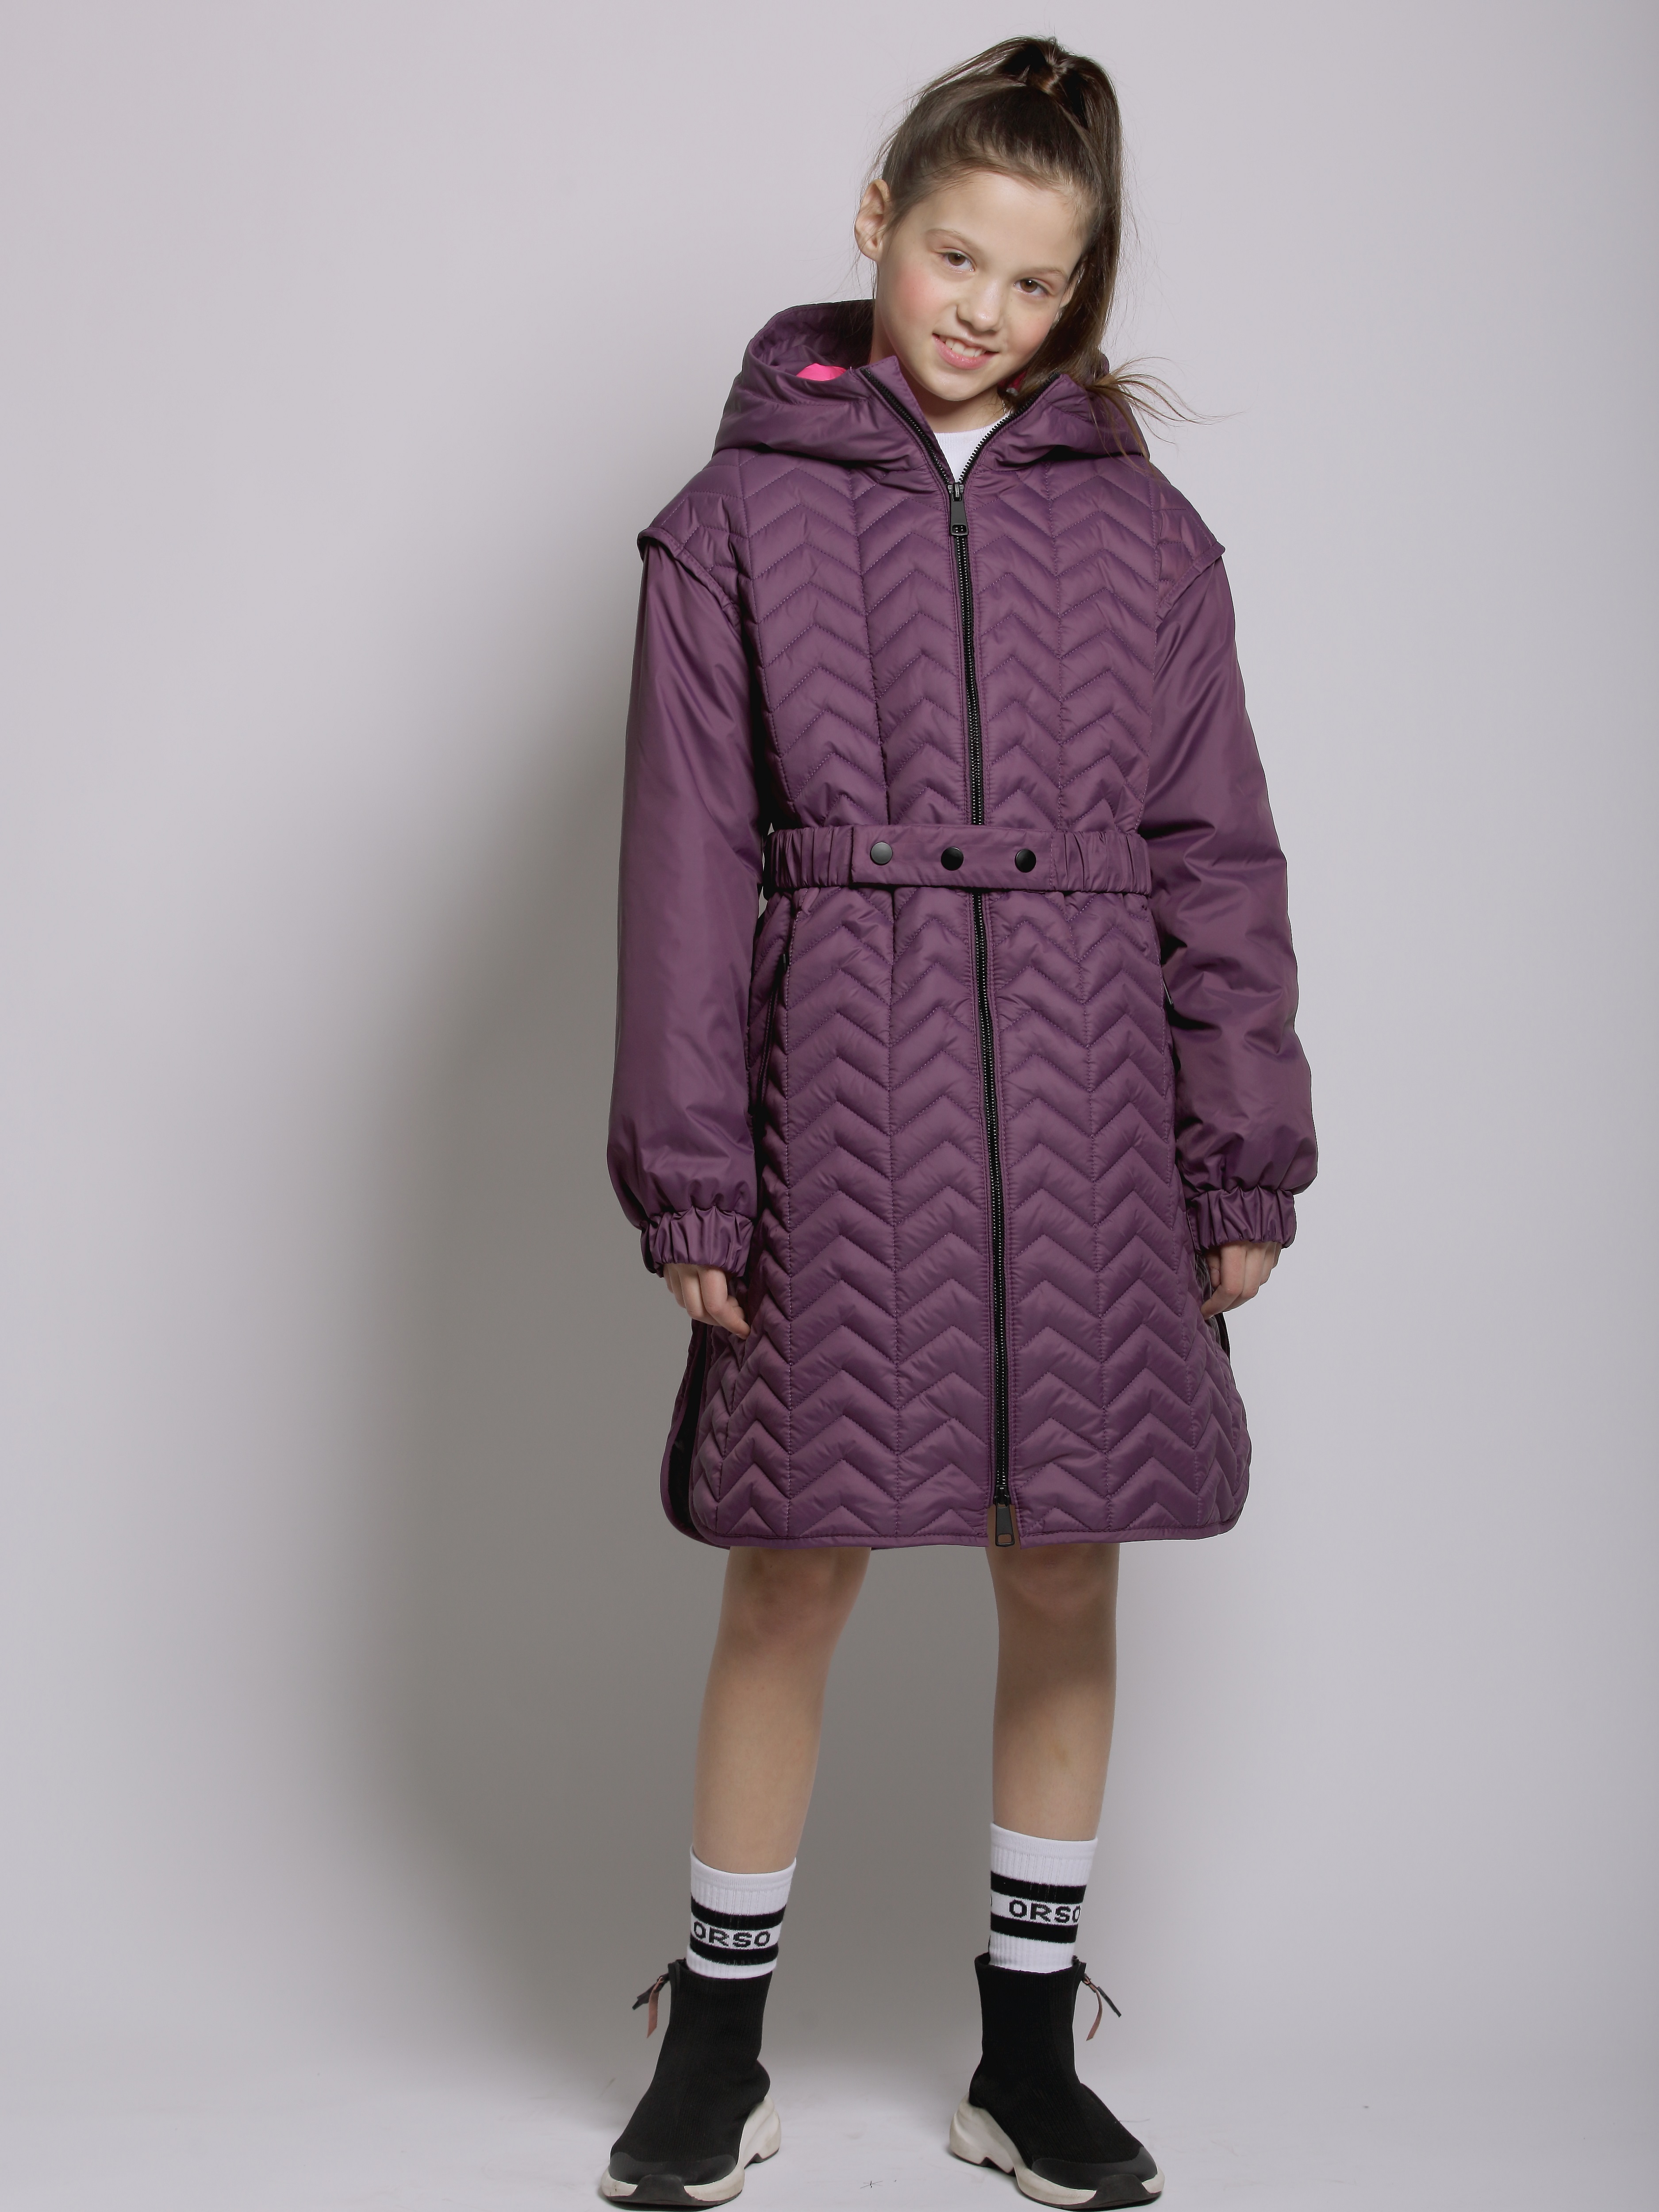 Пальто детское Orso Bianco Мелисса, темно-фиолетовый, ярко-розовый, 122